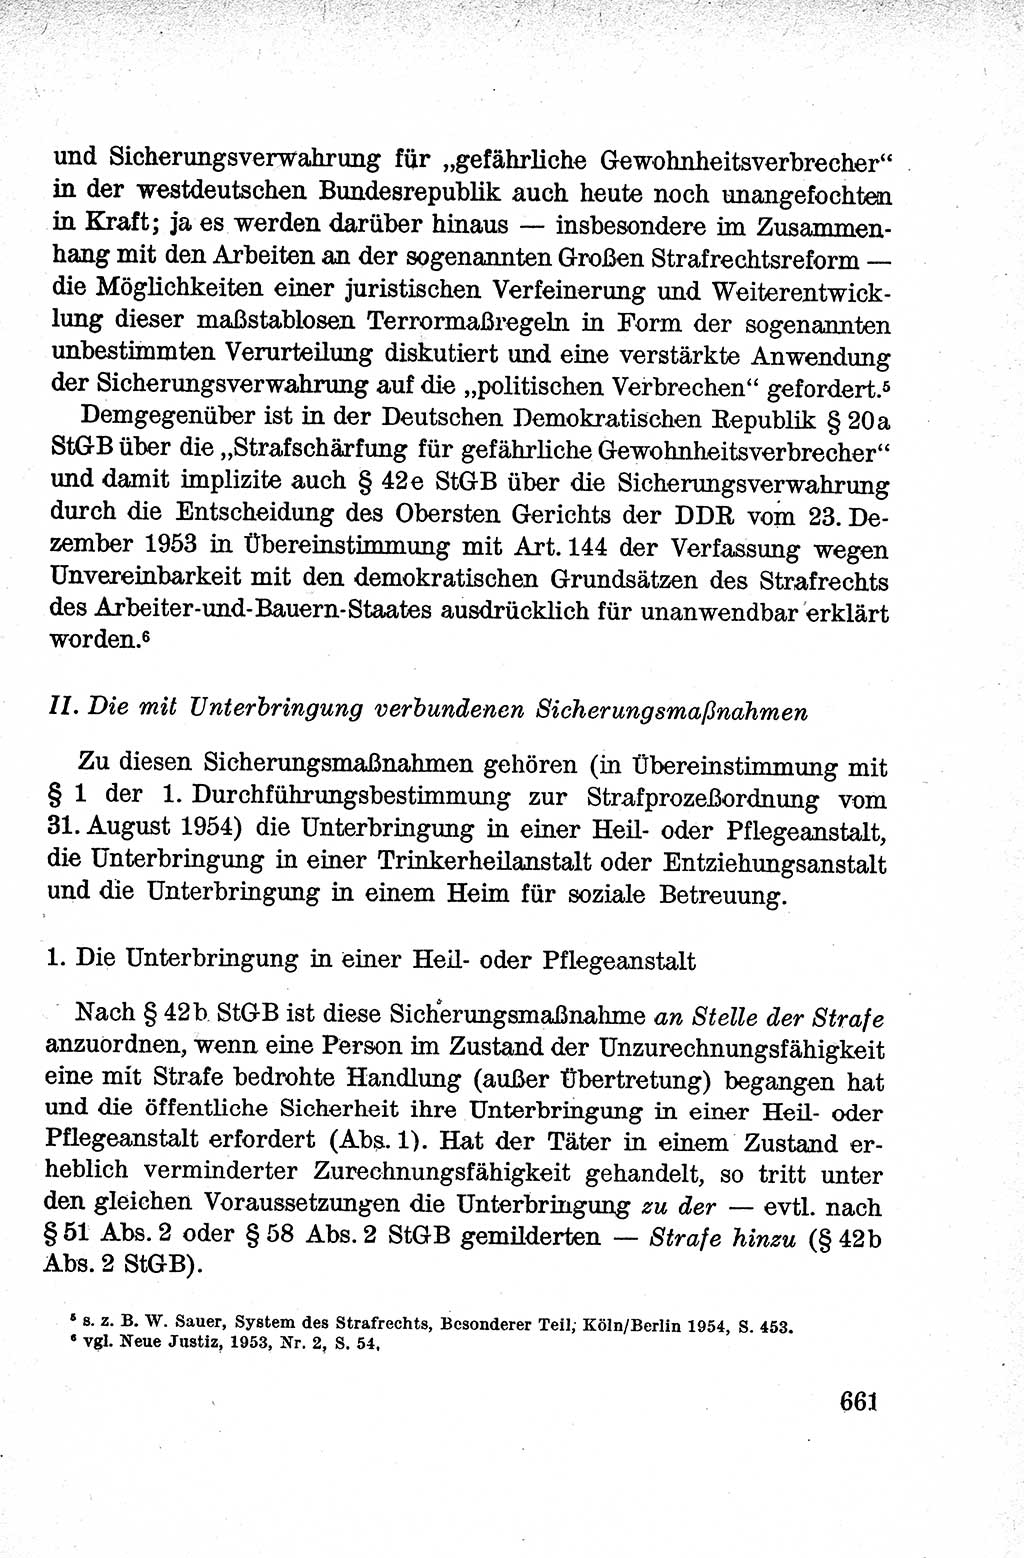 Lehrbuch des Strafrechts der Deutschen Demokratischen Republik (DDR), Allgemeiner Teil 1959, Seite 661 (Lb. Strafr. DDR AT 1959, S. 661)